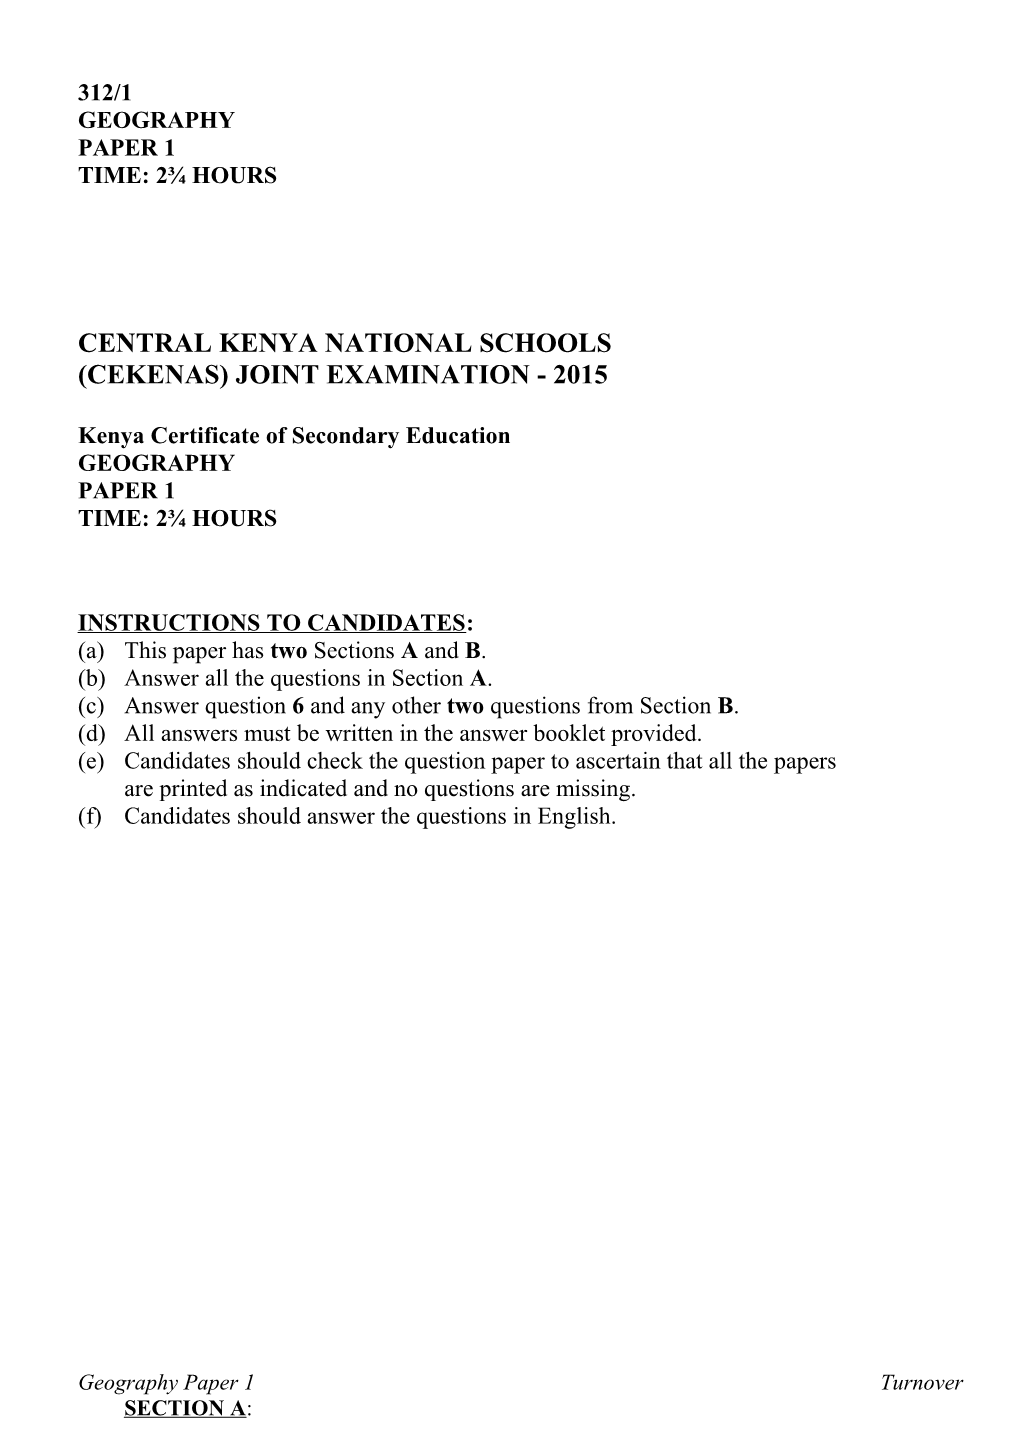 Central Kenya National Schools